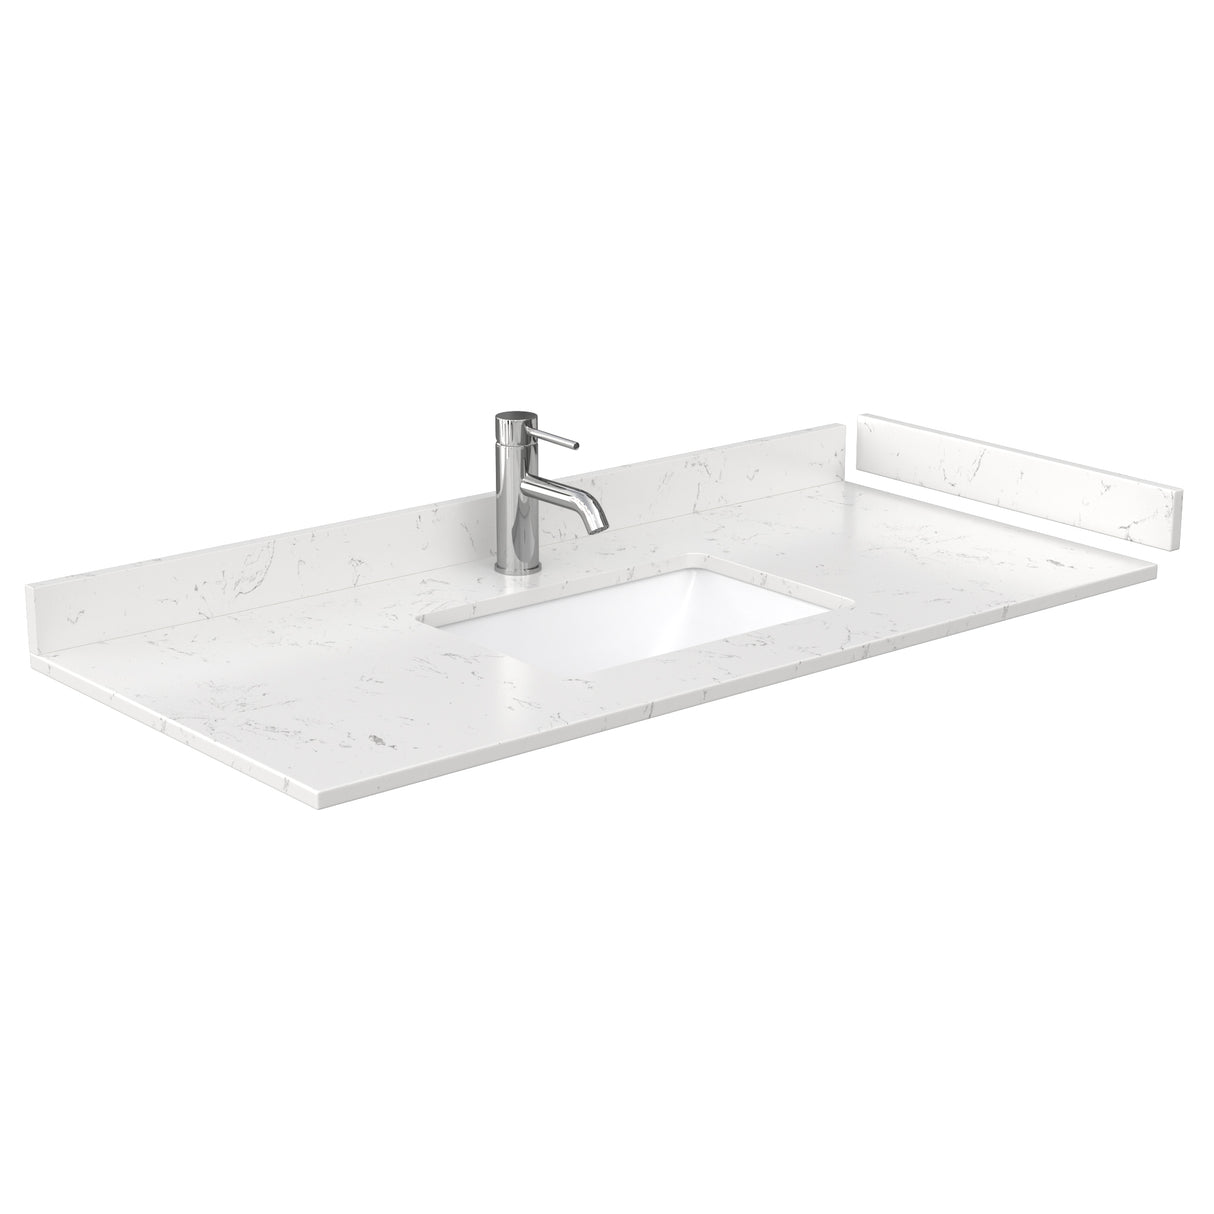 Deborah 48 Inch Single Bathroom Vanity in White Carrara Cultured Marble Countertop Undermount Square Sink Medicine Cabinet